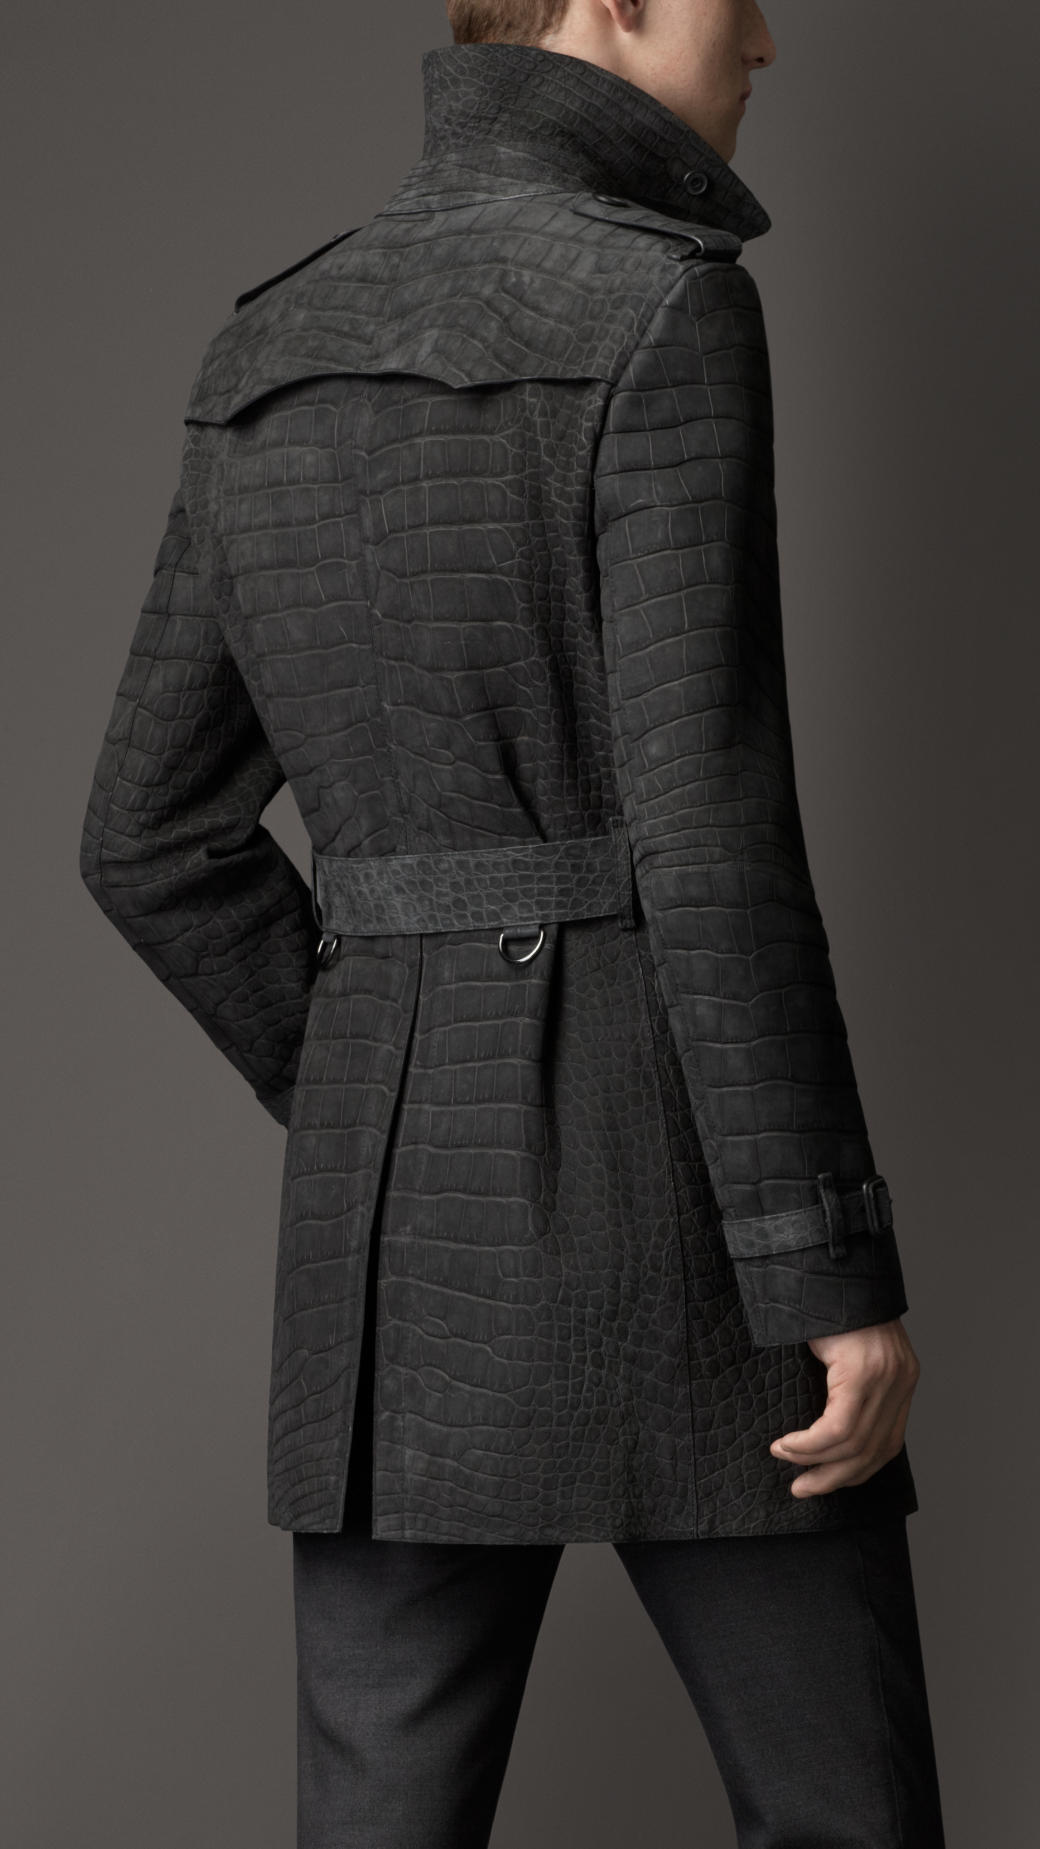 Alligator / Crocodile Faux Leather Trench Coat Unisex Stylish and Fashion  Design